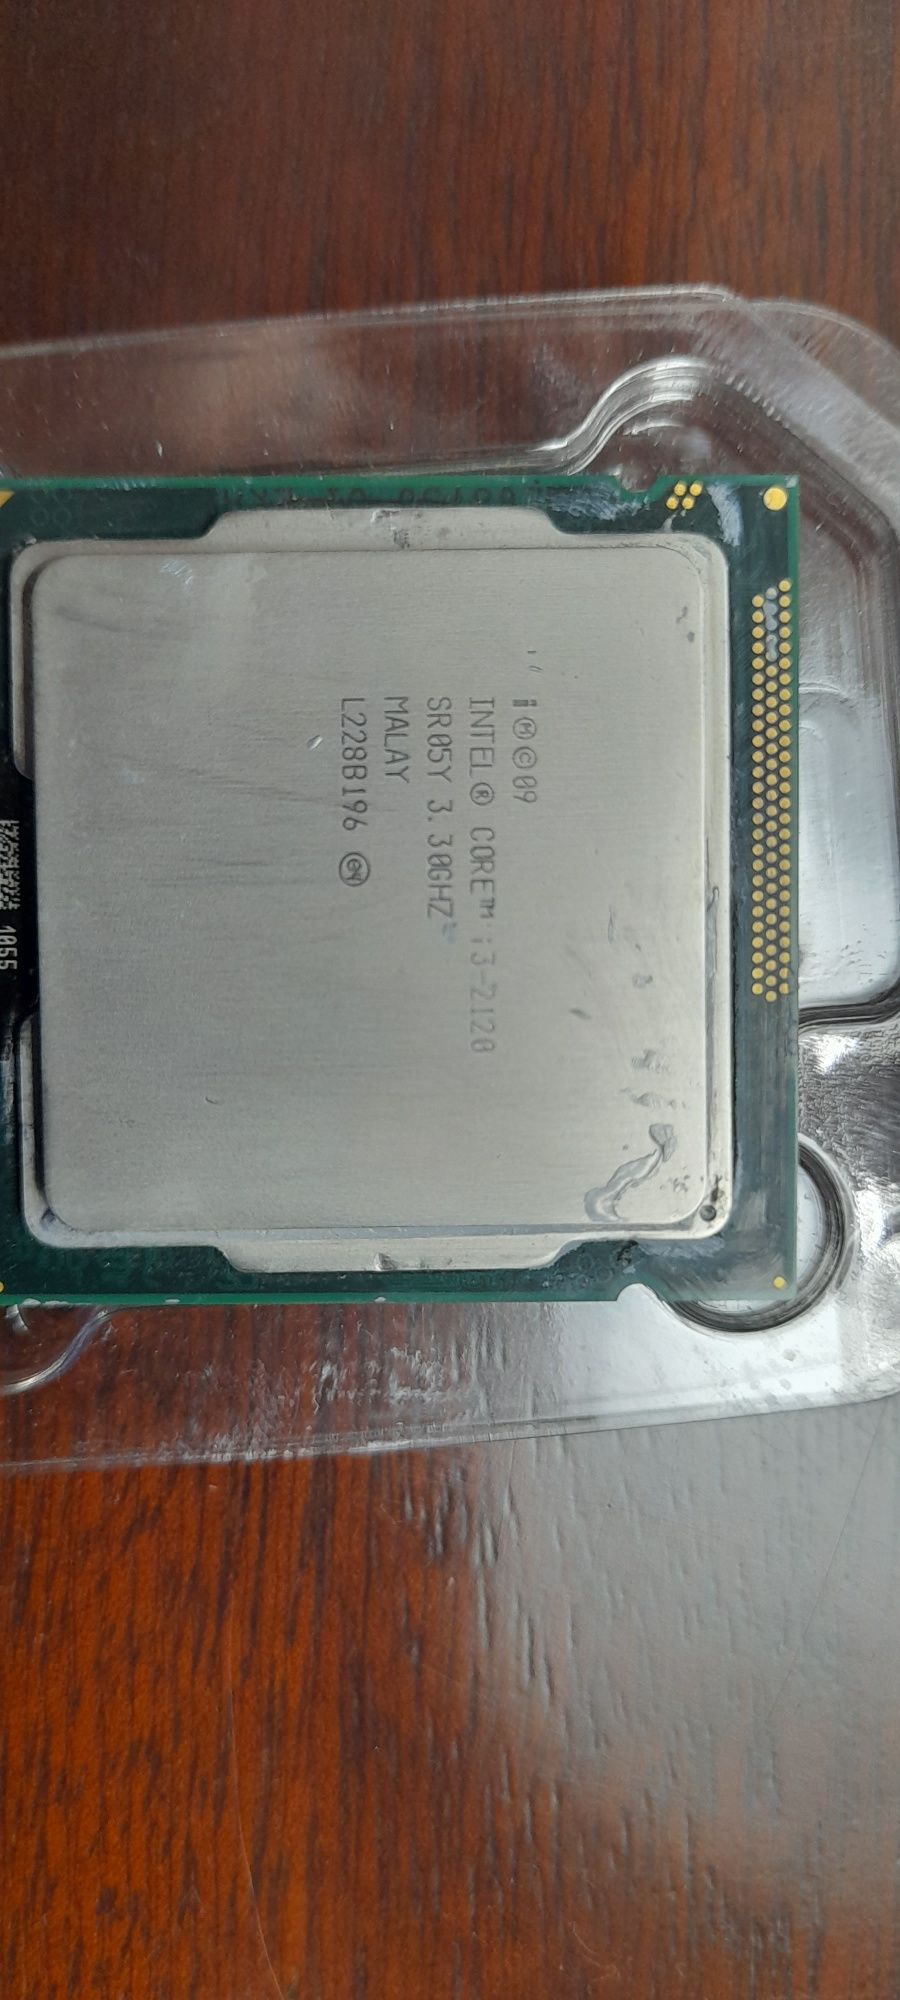 Processador Intel I3 2120